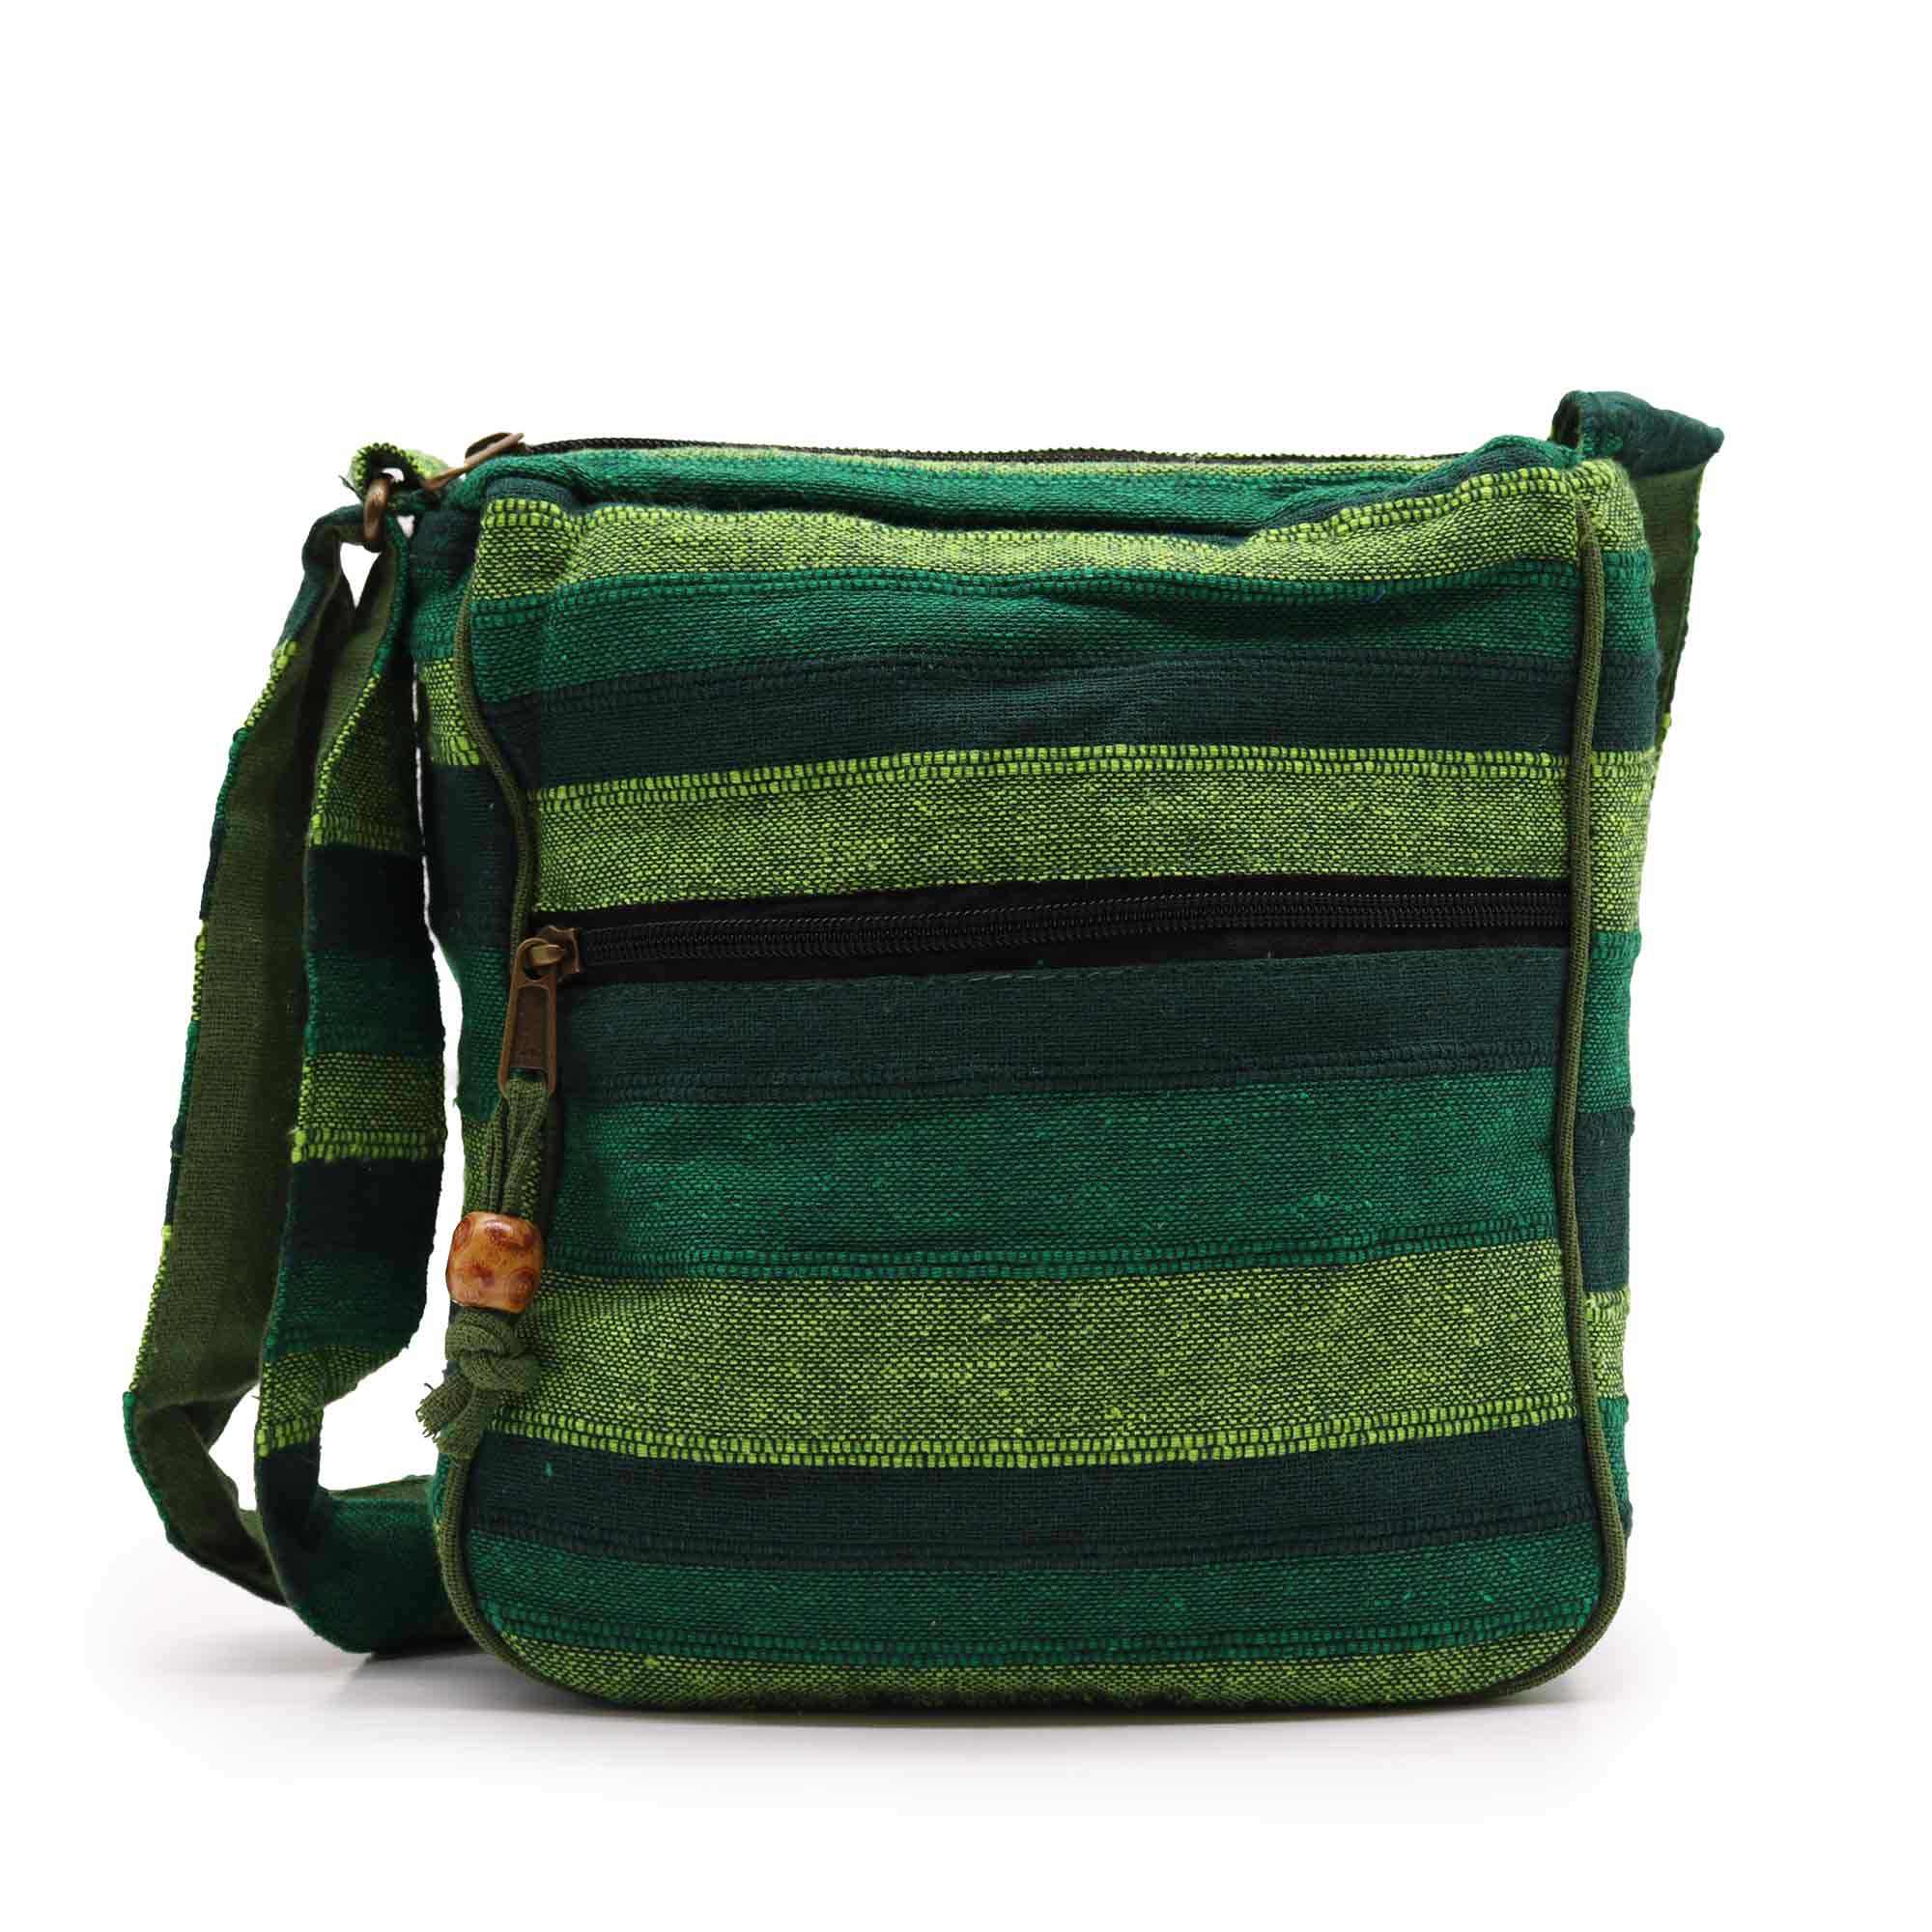 View Lrg Nepal Sling Bag Adjustable Strap Forest Green information